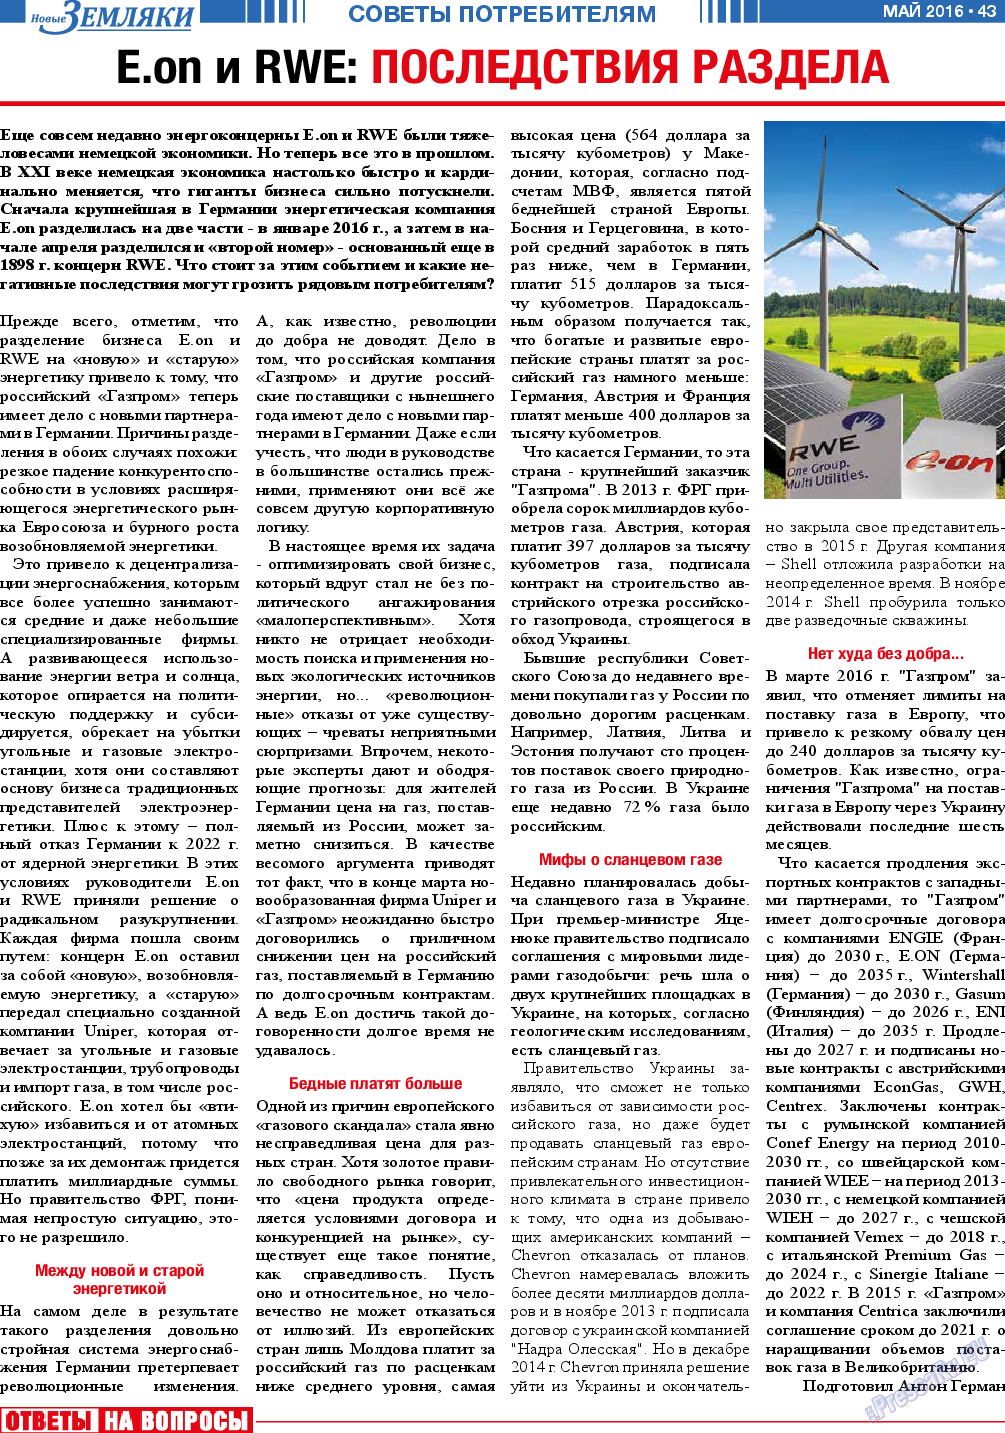 Новые Земляки (газета). 2016 год, номер 5, стр. 43